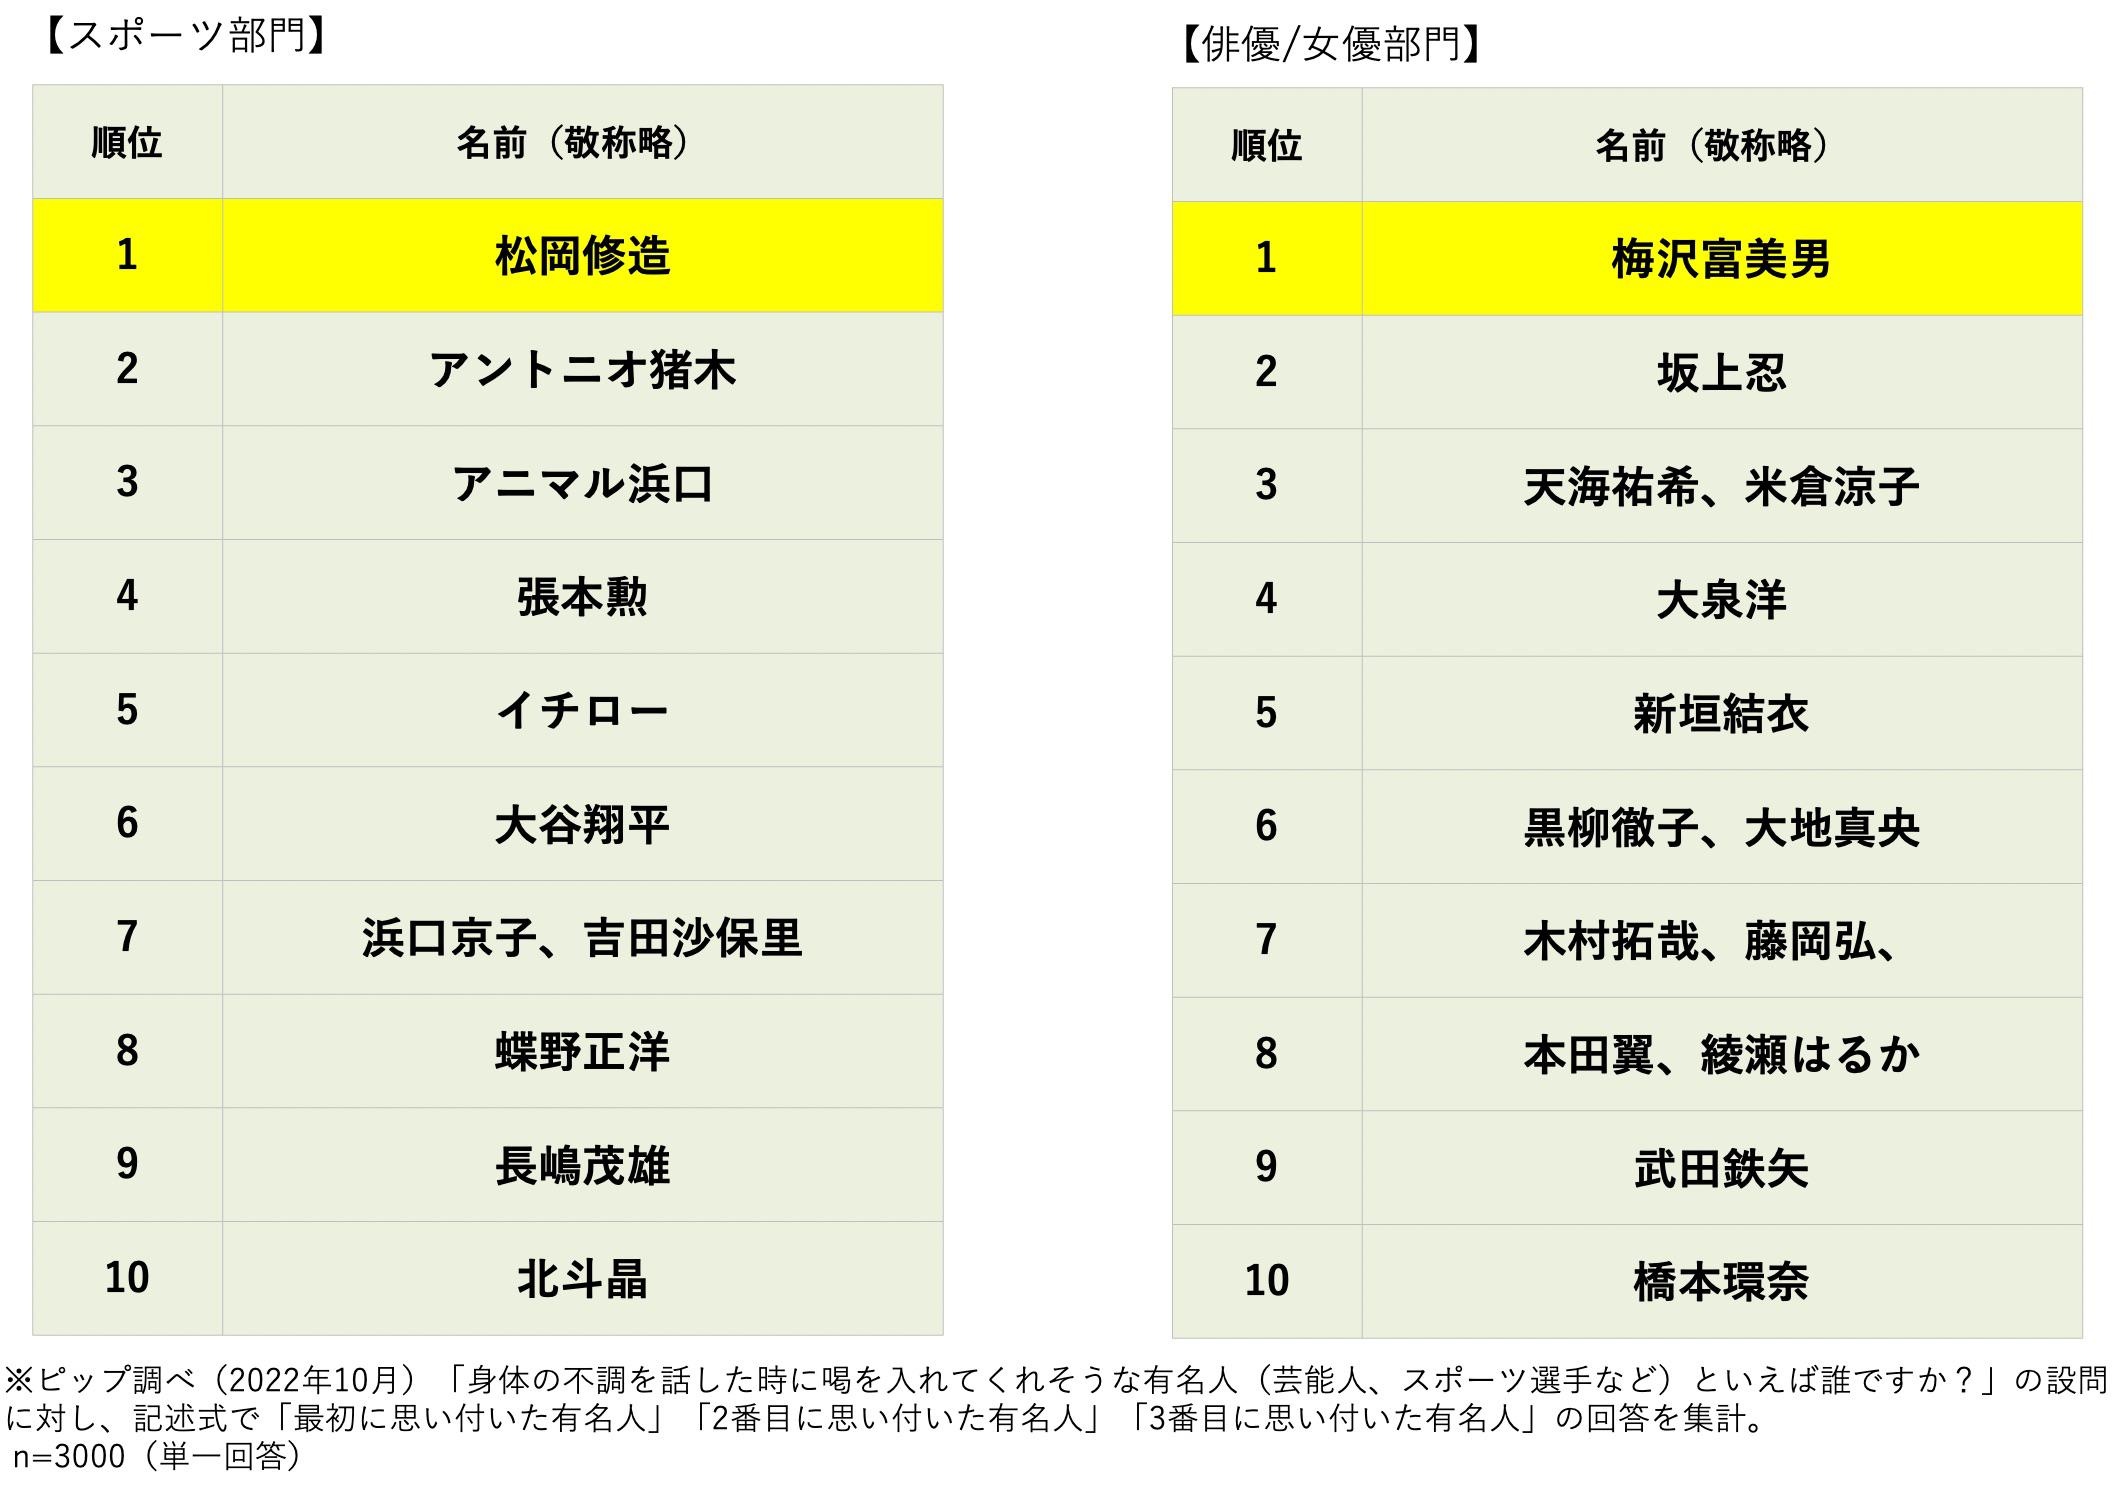 スポーツ部門は松岡修造、俳優/女優部門は梅沢富美男が1位